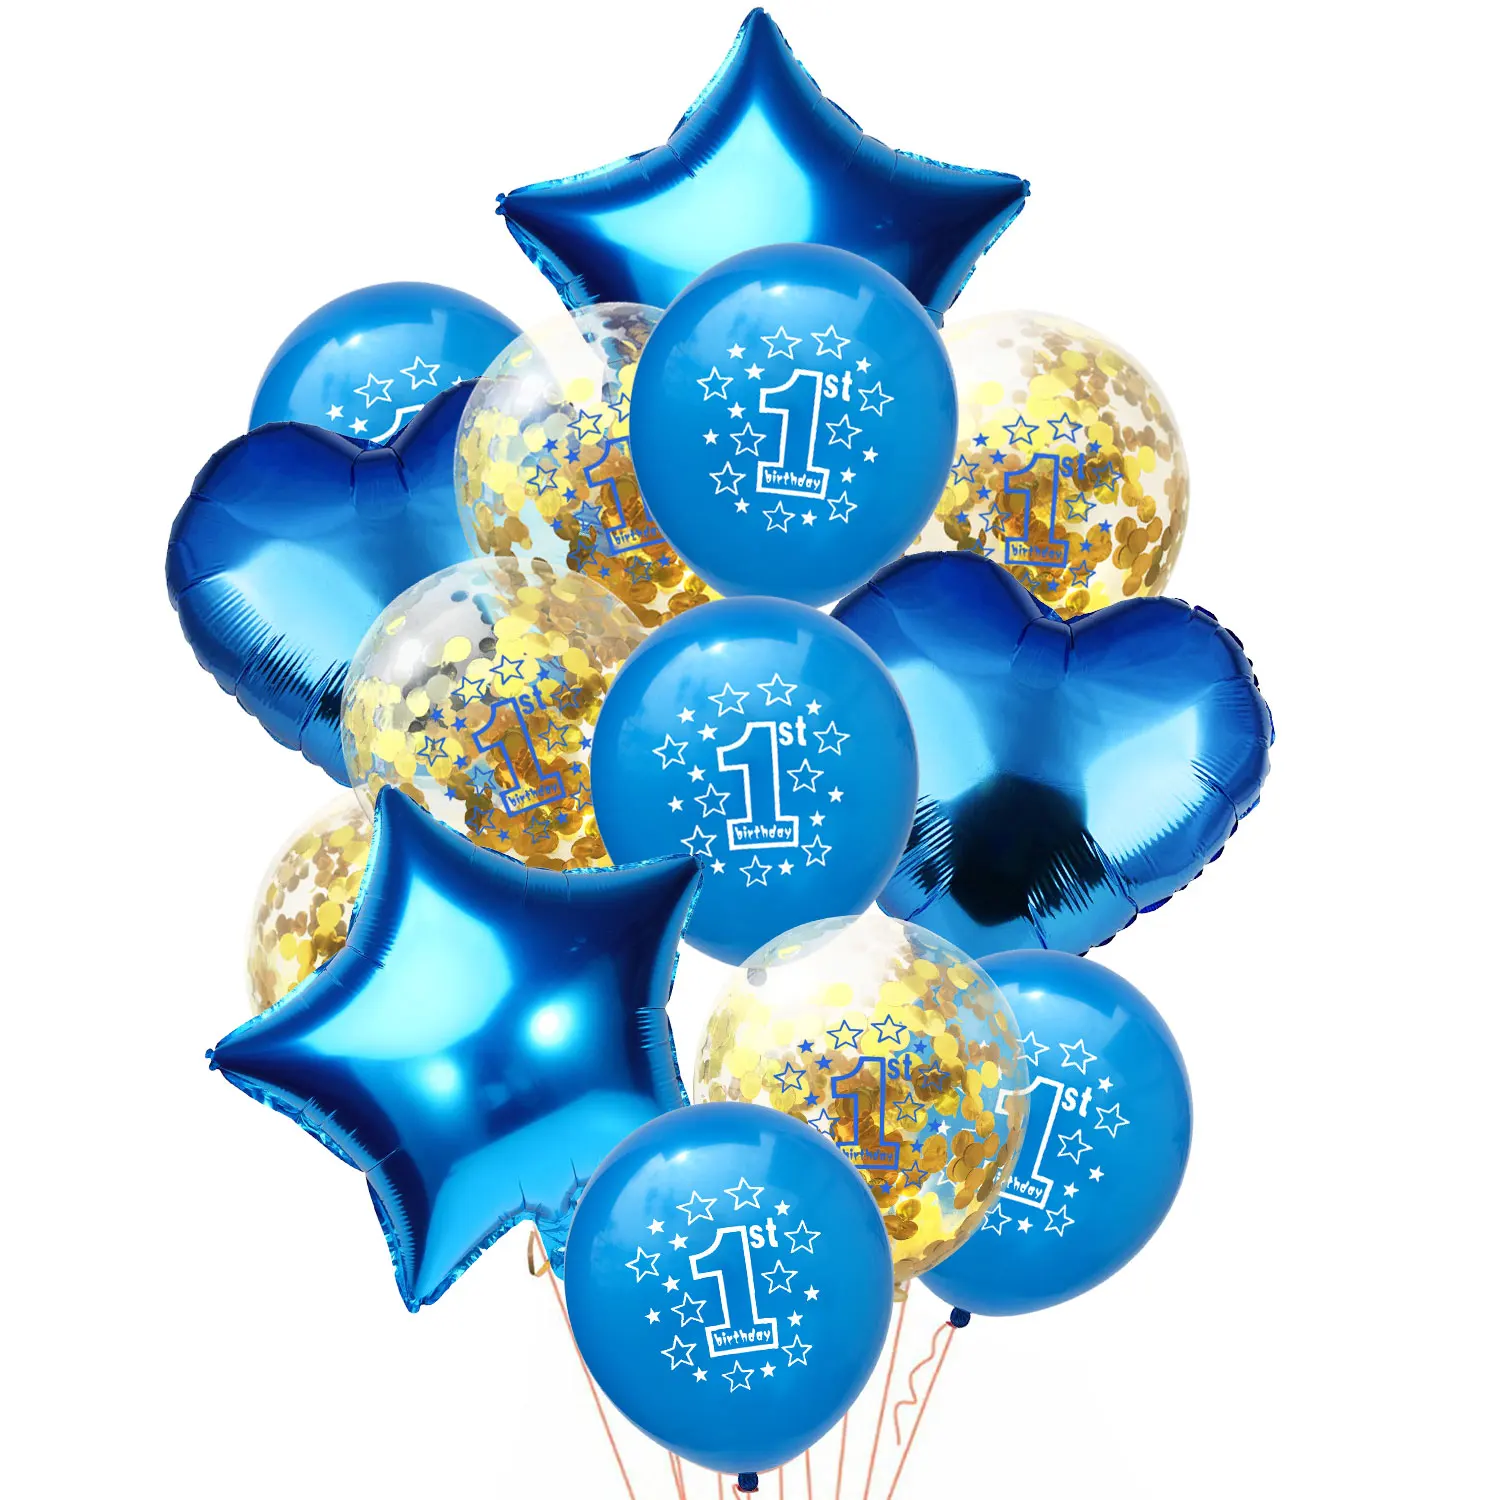 ZLJQ 14 шт. блеск 1st с днем рождения воздушный шар "Конфетти" для маленьких мальчиков и девочек вечерние украшения сувениры Поставки первый день рождения для детей